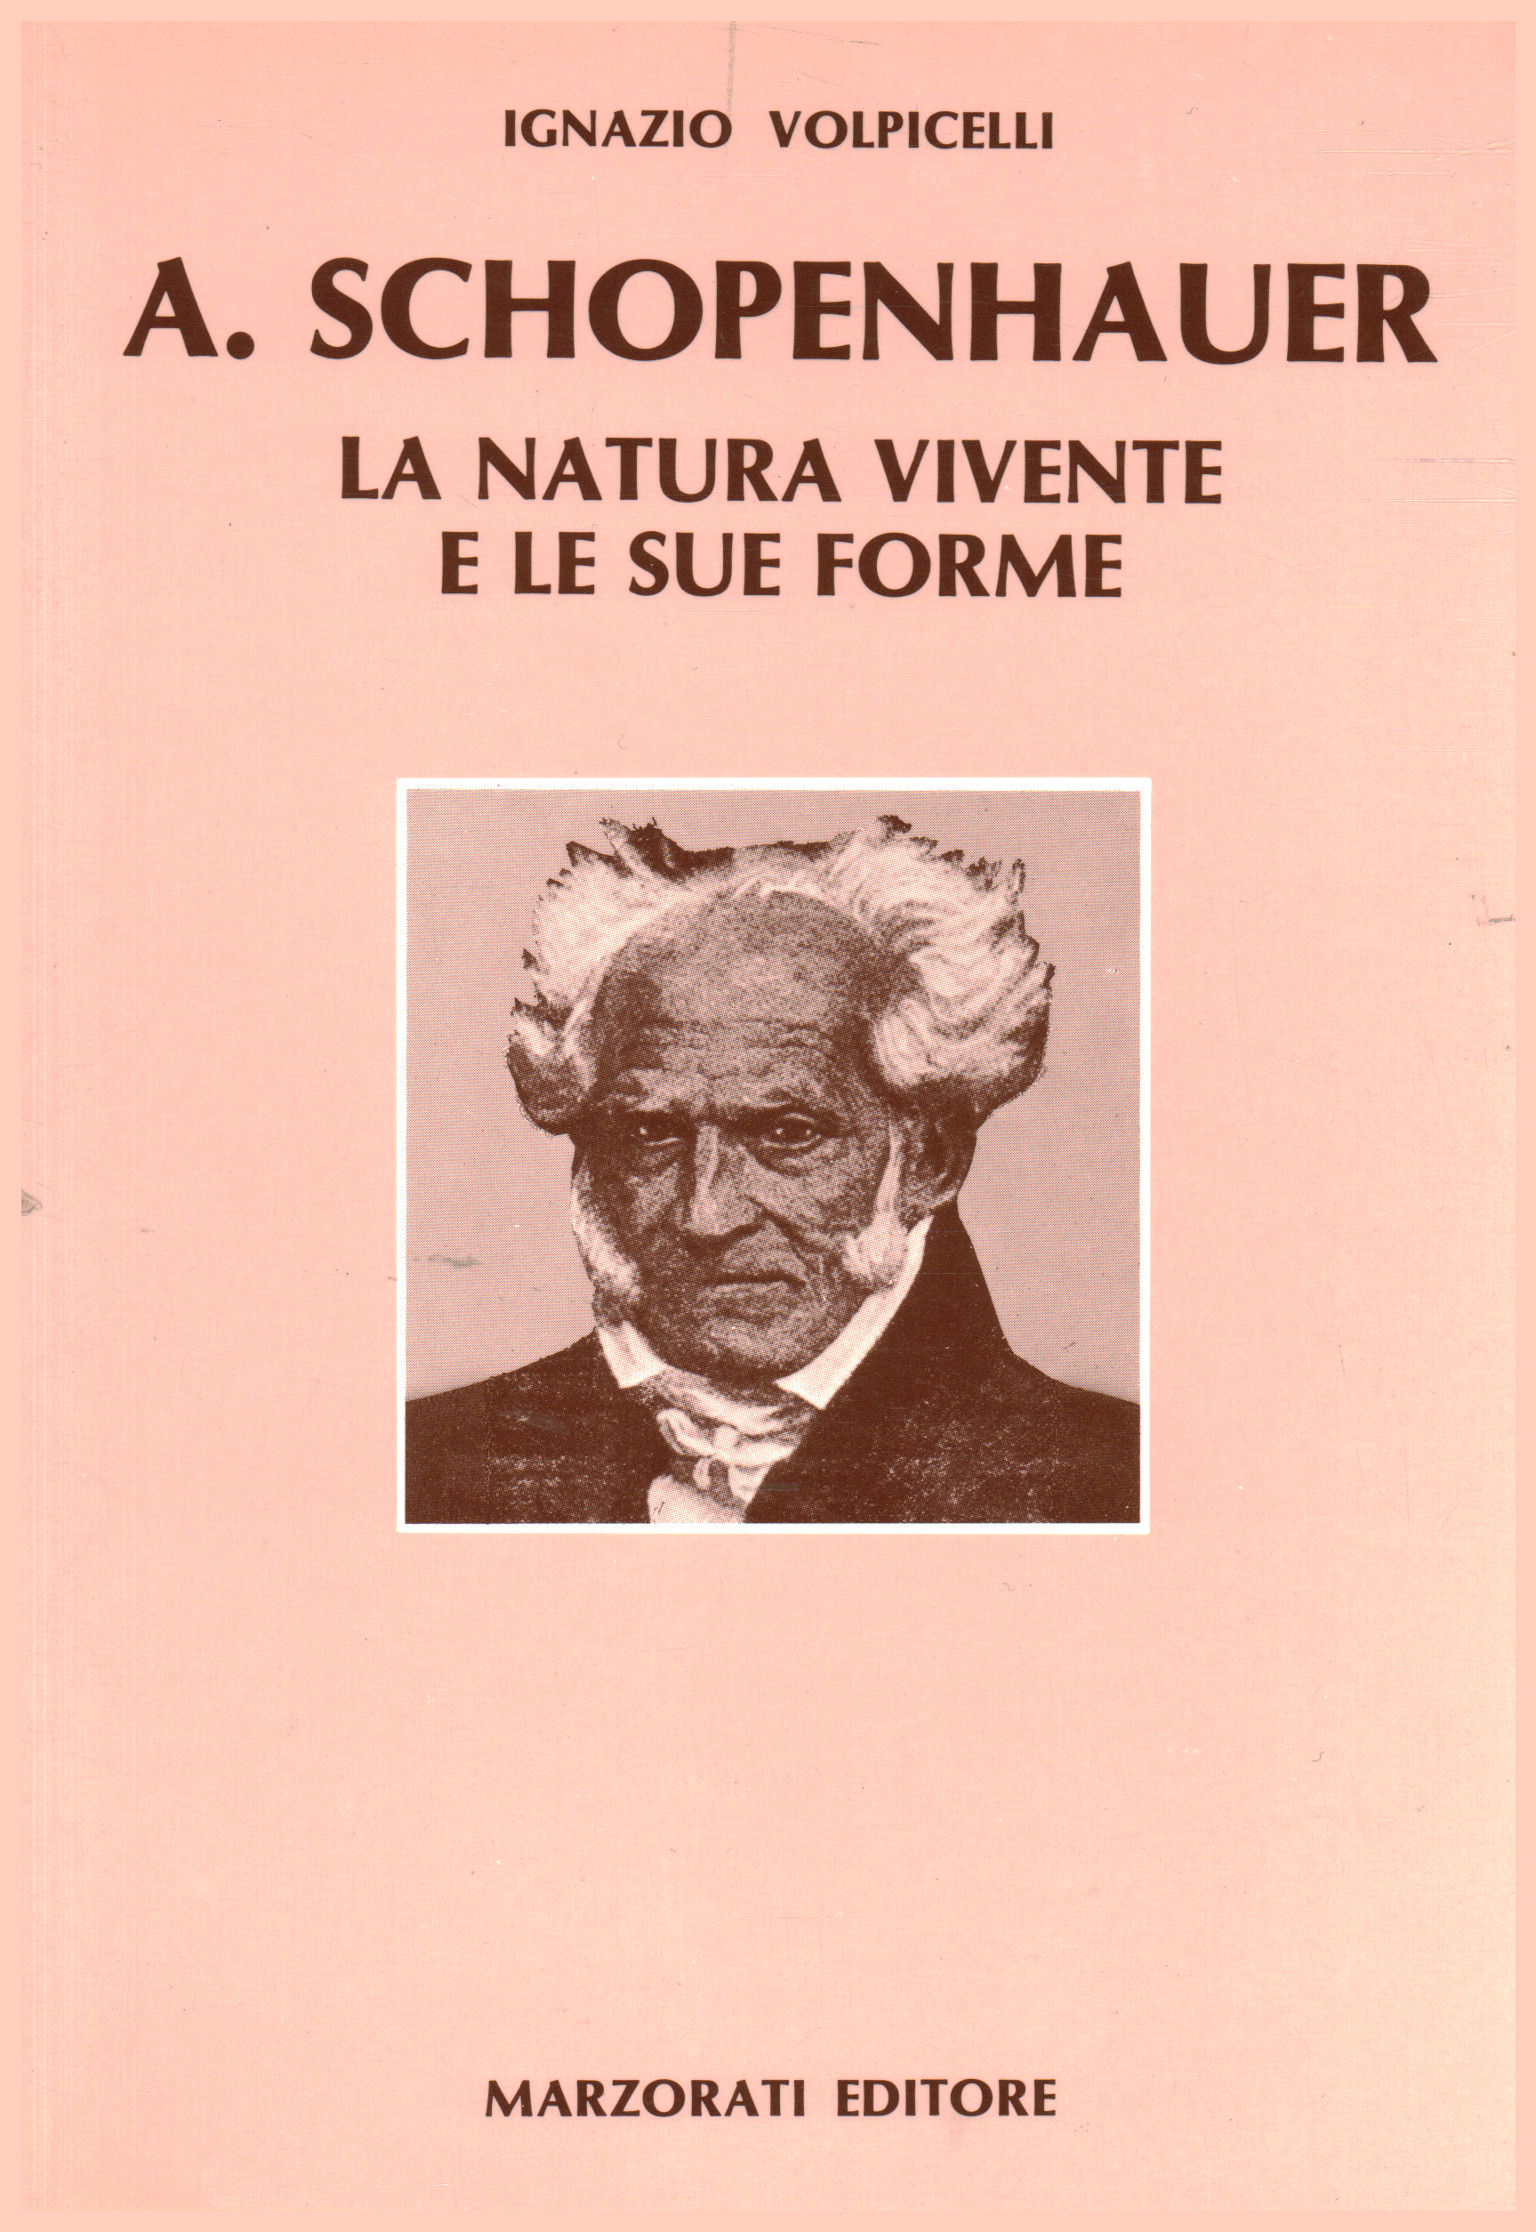 A. Schopenauer, Ignazio Volpicelli